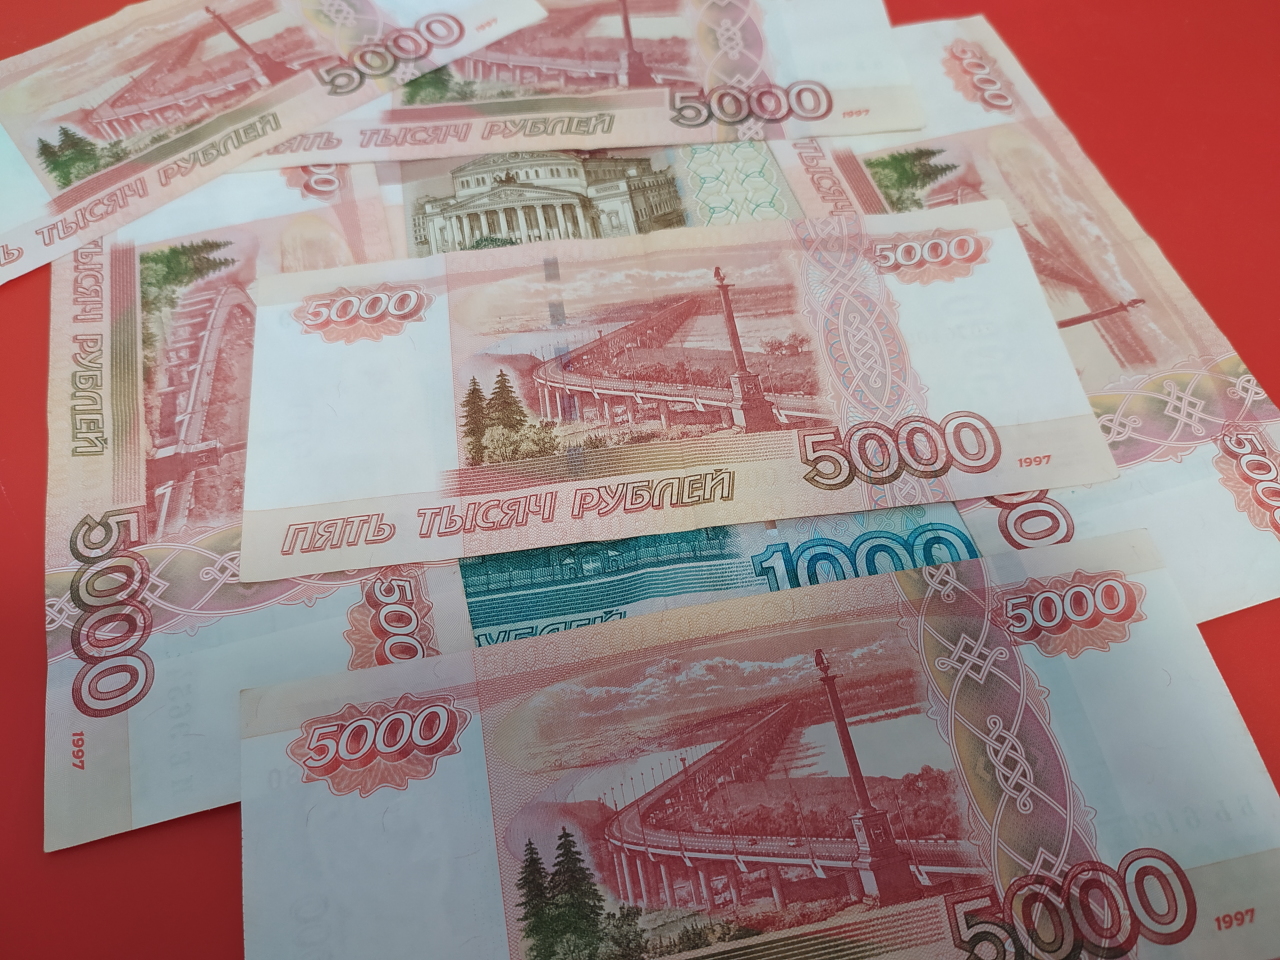 5 тыс рублей новые